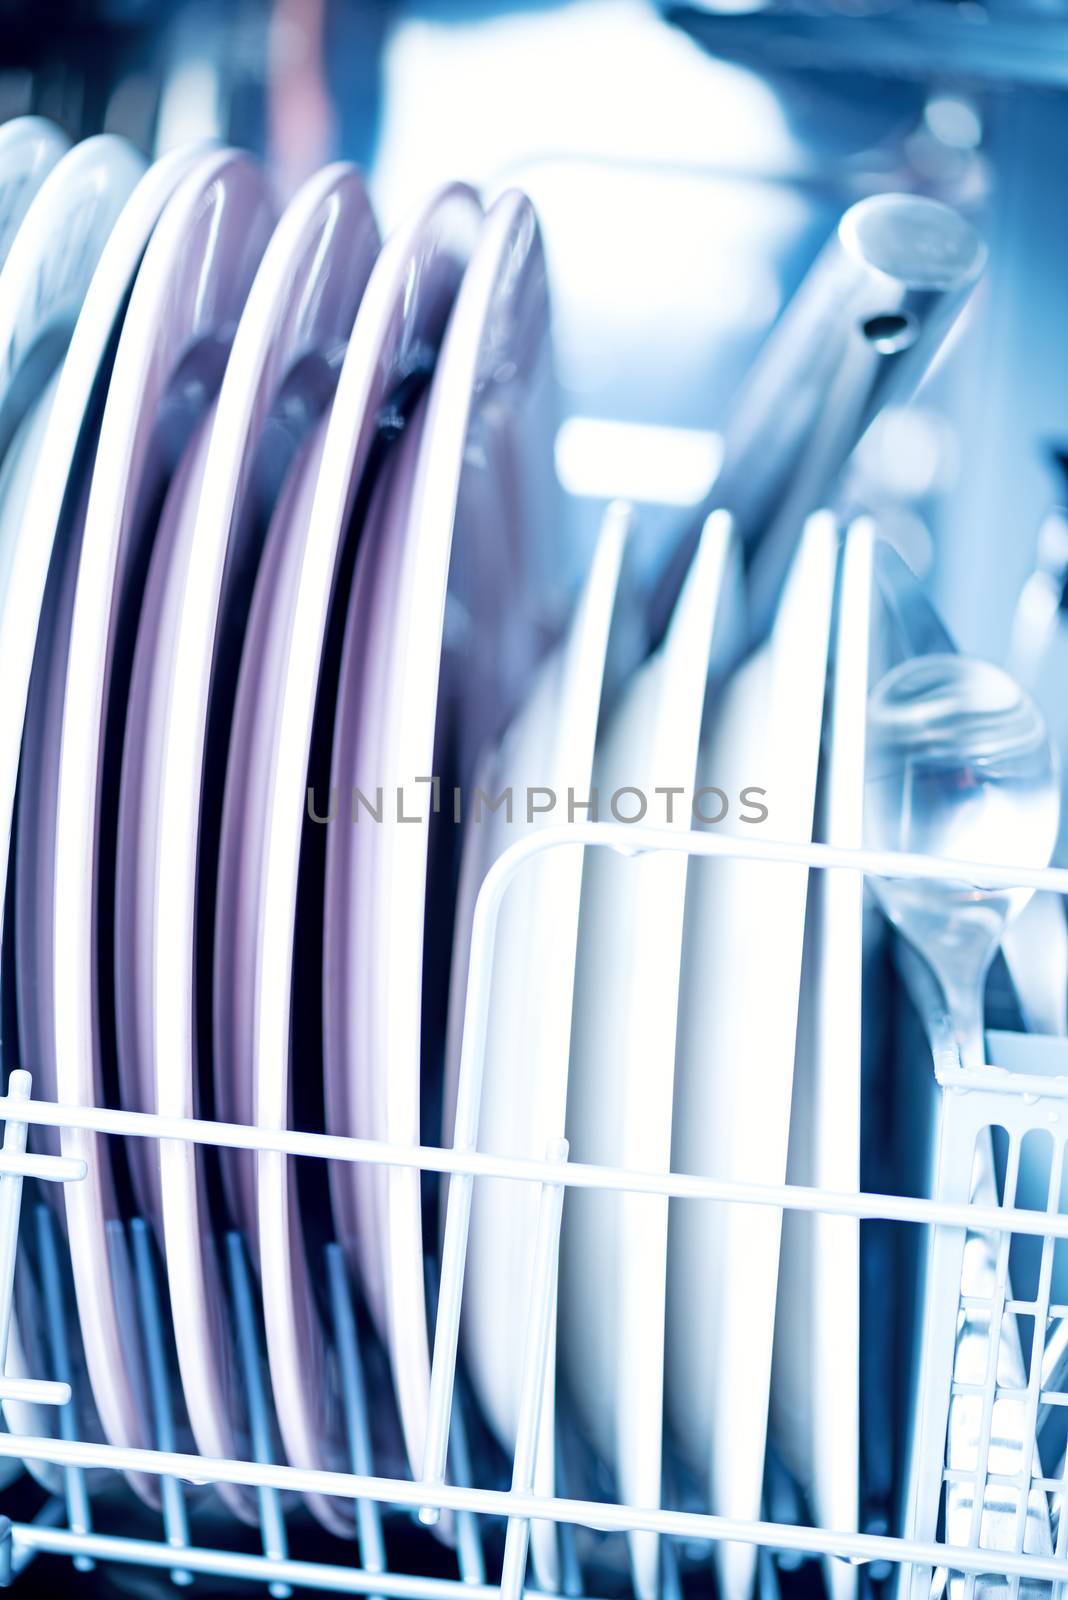 Clean kitchenware in dishwasher macro by Nanisimova